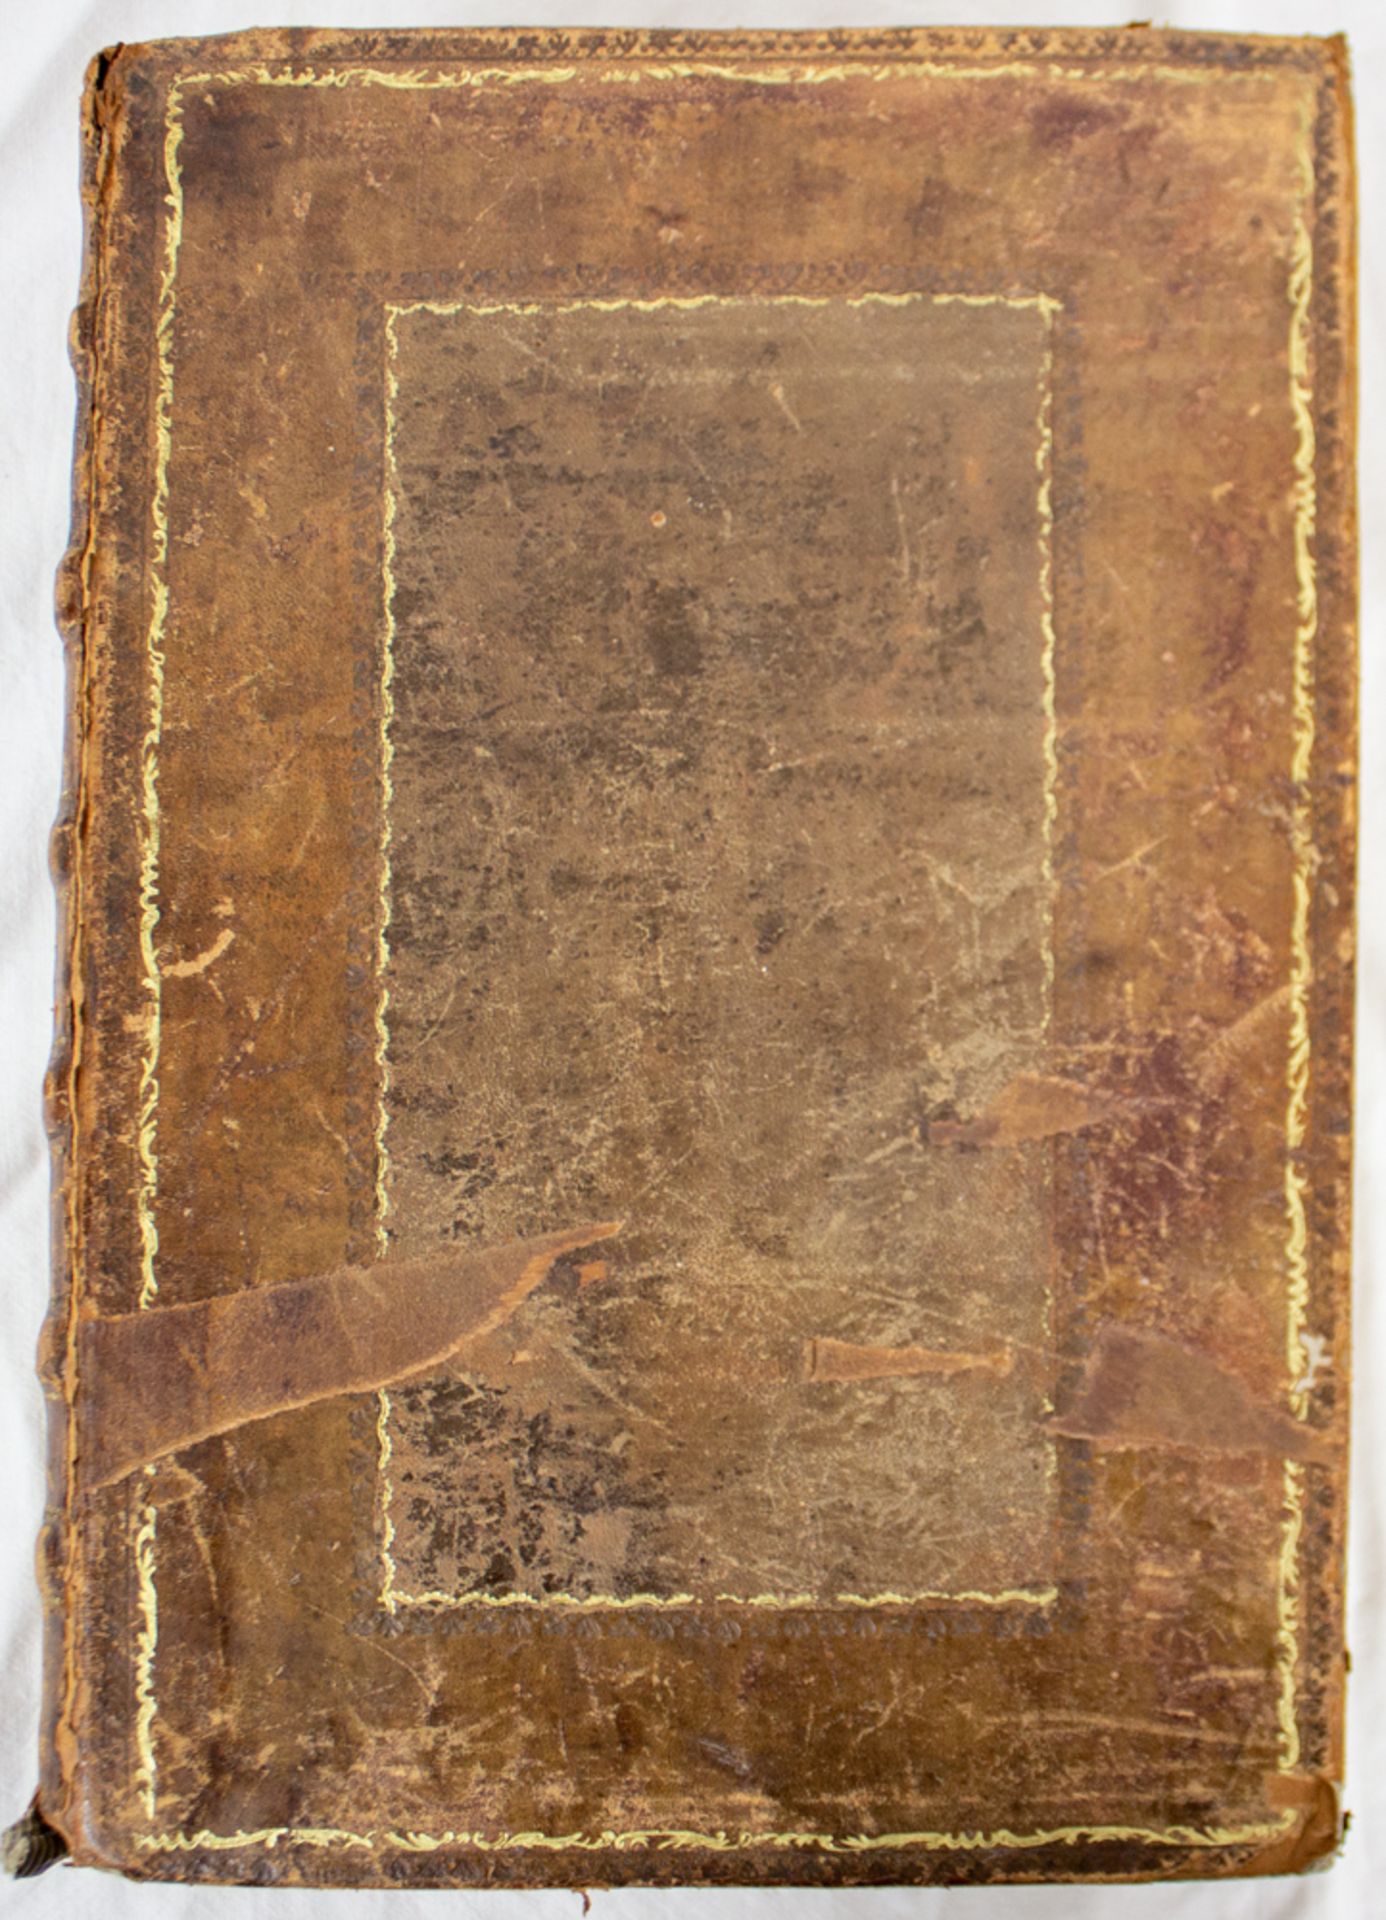 Weigand Bibel, Kolorierte Holzschnitte von Jost Amman, 16. Jh. - Image 8 of 20